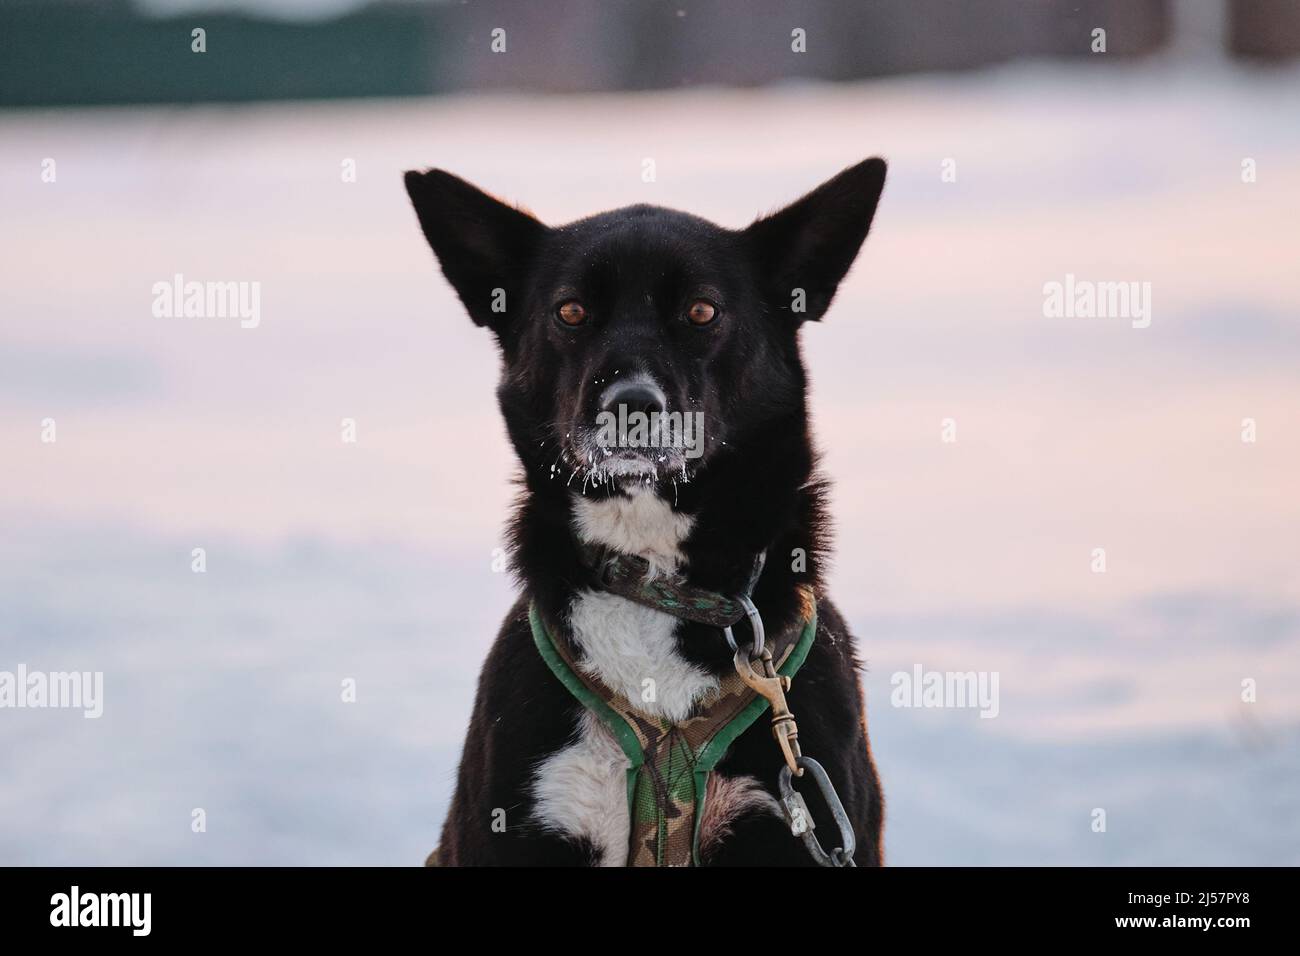 Schwarz-weißer Hund mit hervorstehenden Ohren und intelligenten braunen Augen Porträt Nahaufnahme. Die nördliche Schlittenhunderasse Alaskan Husky ist an Steak o angekettet Stockfoto